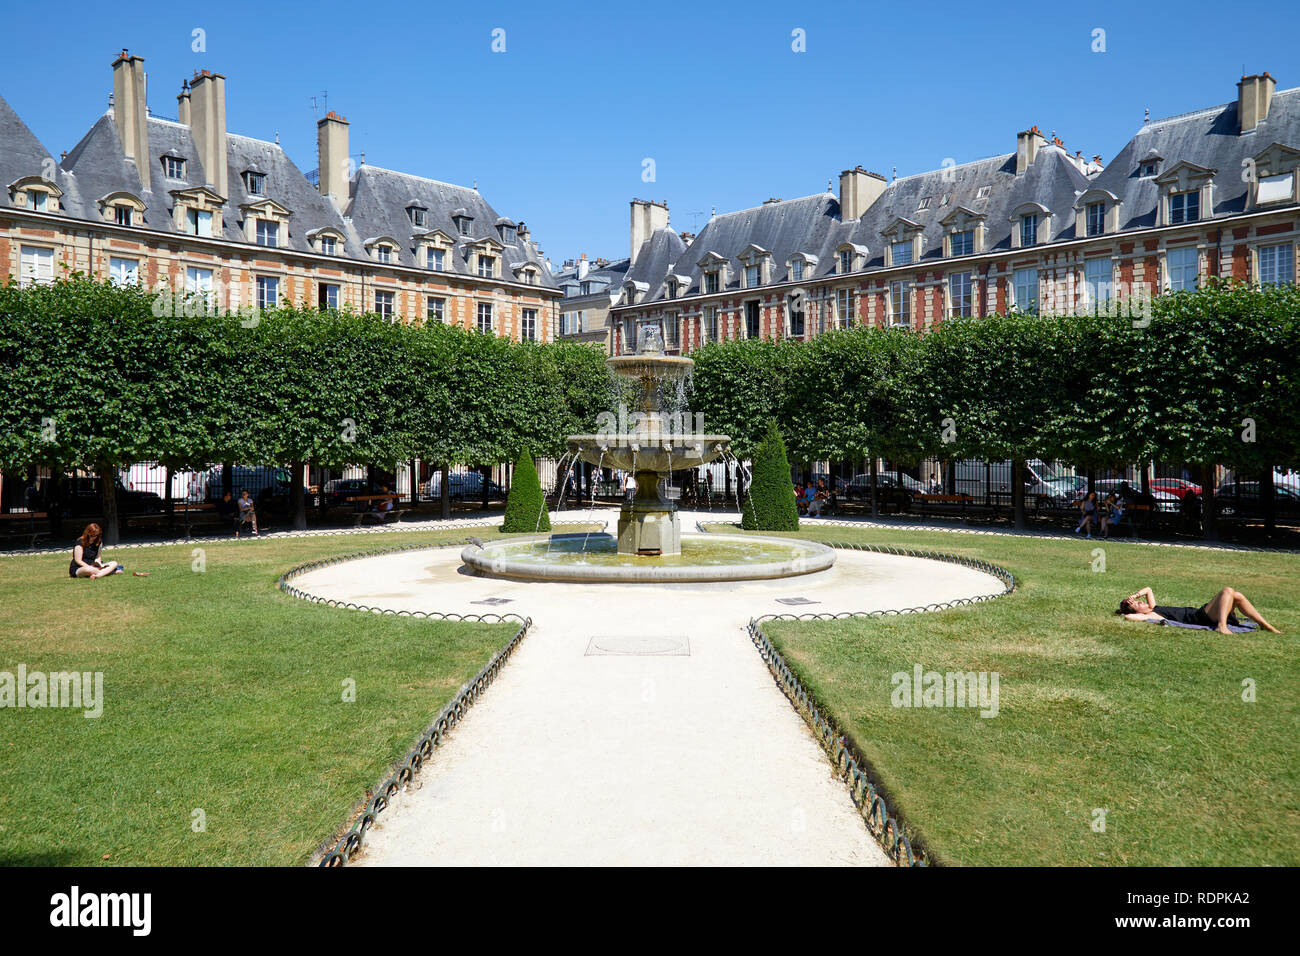 París, Francia - Julio 6, 2018: Place des Vosges con gente tomando el sol en la hierba en un día soleado de verano, el azul claro del cielo en París Foto de stock